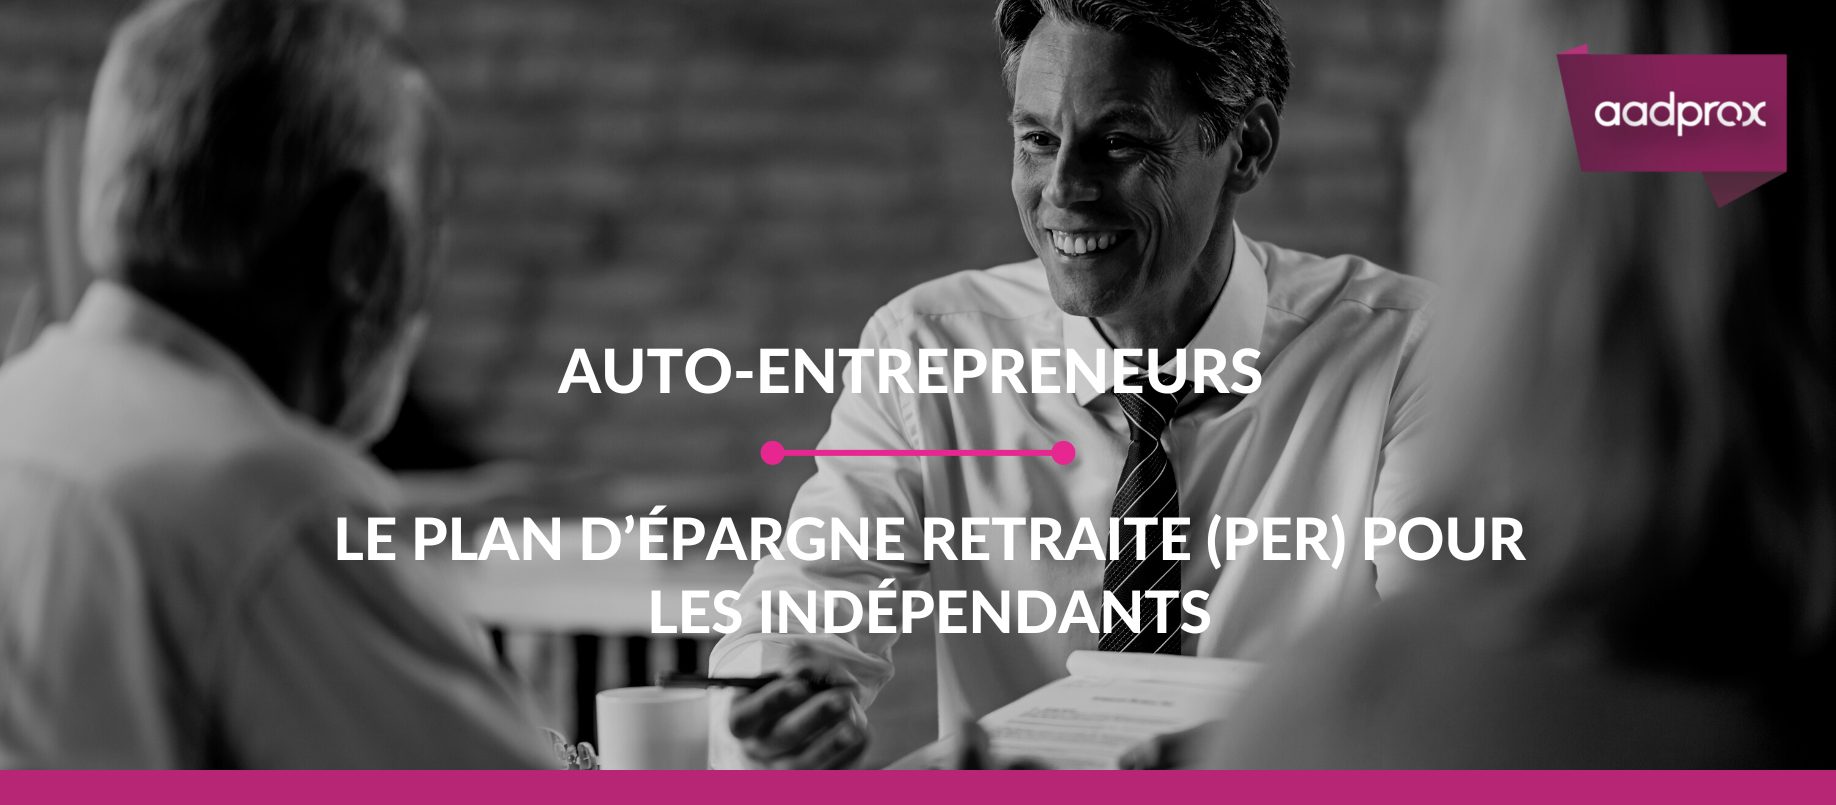 You are currently viewing Auto-entrepreneurs : le PER (Plan d’Épargne Retraite) pour les indépendants